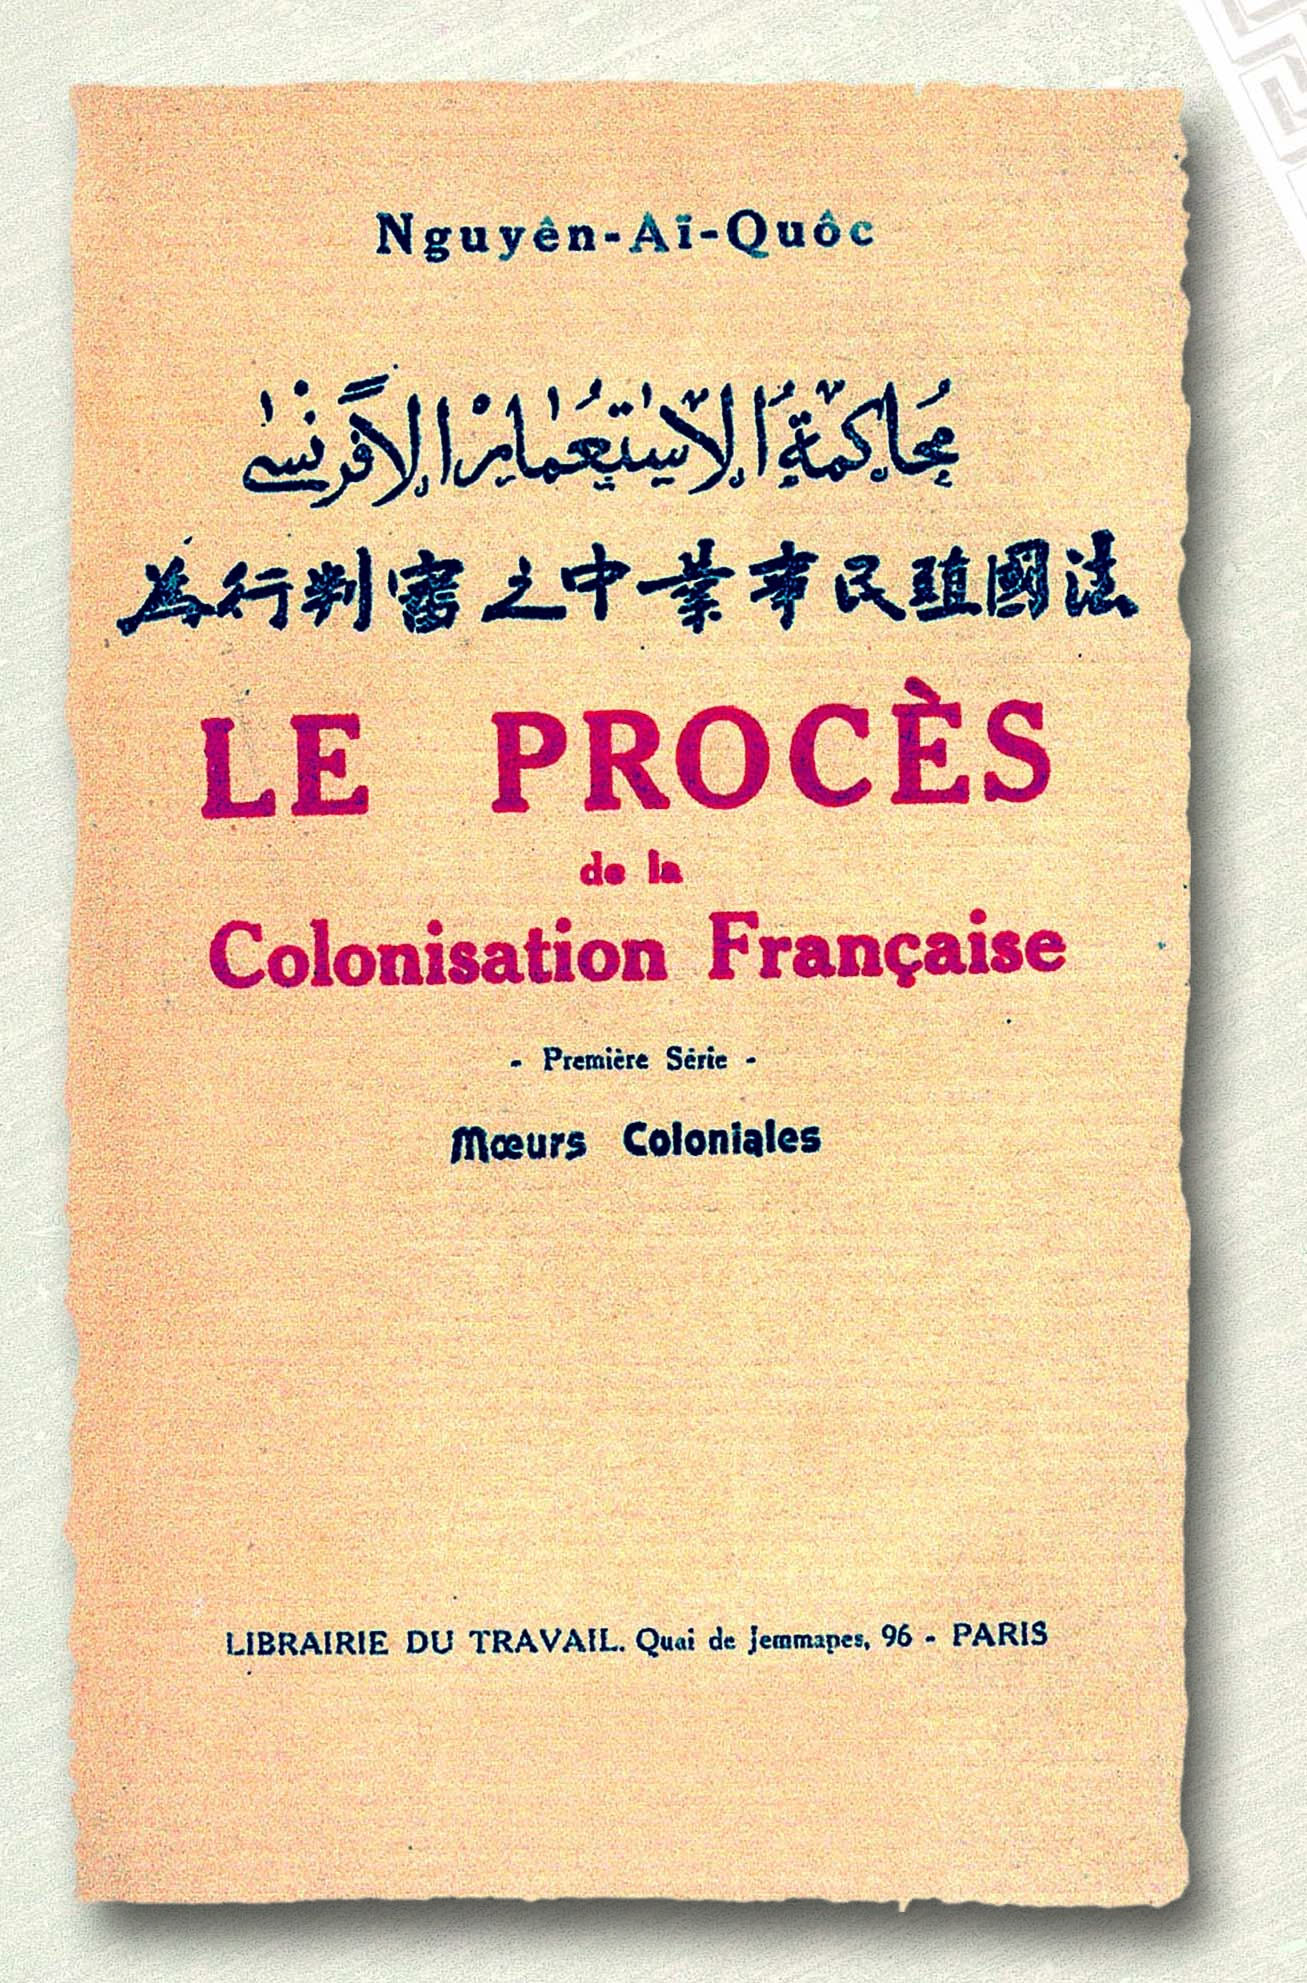 Sách Bản án chế độ thực dân Pháp của Nguyễn Ái Quốc, xuất bản lần đầu tiên ở Pháp năm 1925